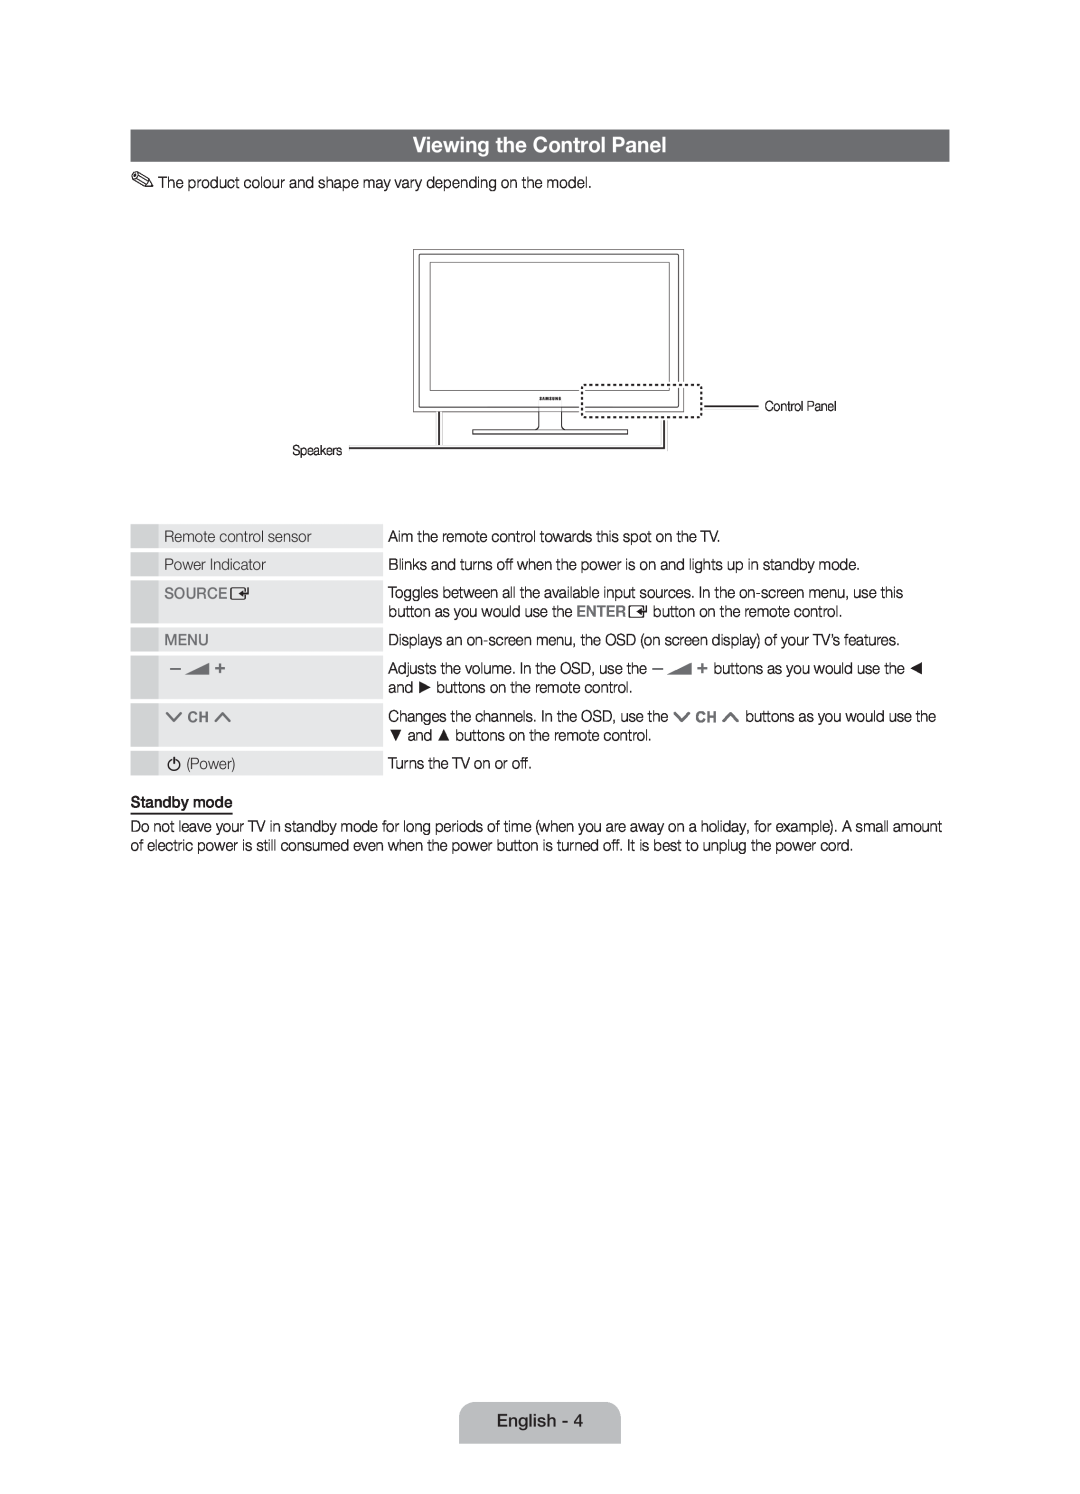 Samsung UE40D5000PWXZG, UE40D5000PWXTK, UE32D5000PWXXN, UE32D5000PWXZG manual Viewing the Control Panel, Source E, Menu 